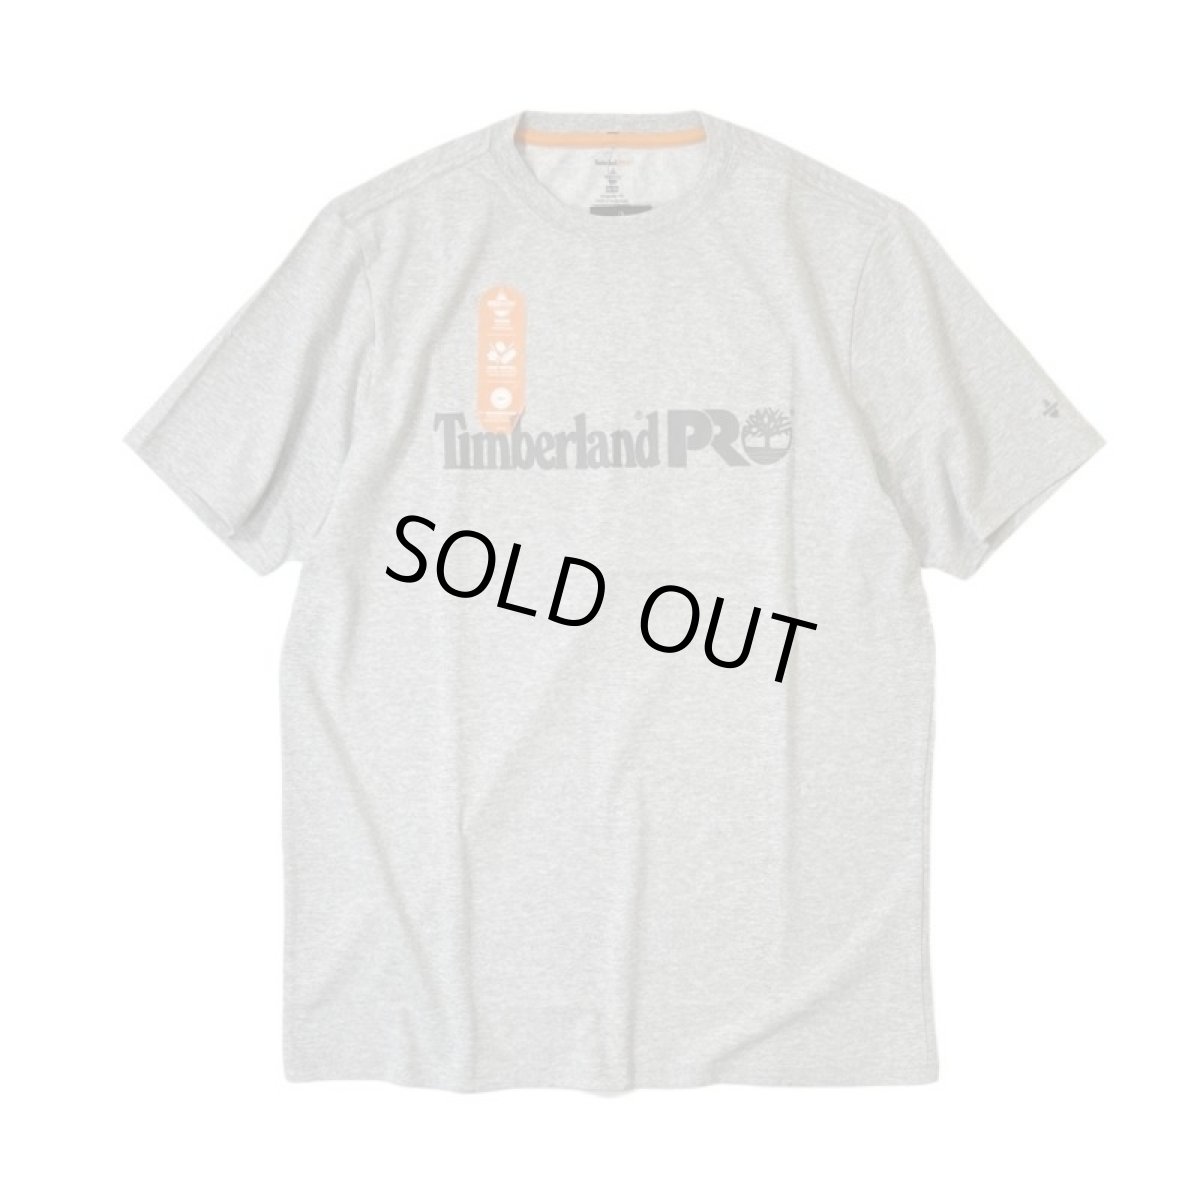 画像1: Timberland PRO Wickwork T-Shirts Heather Grey / ティンバーランドプロ ロゴ Tシャツ ヘザーグレー (1)